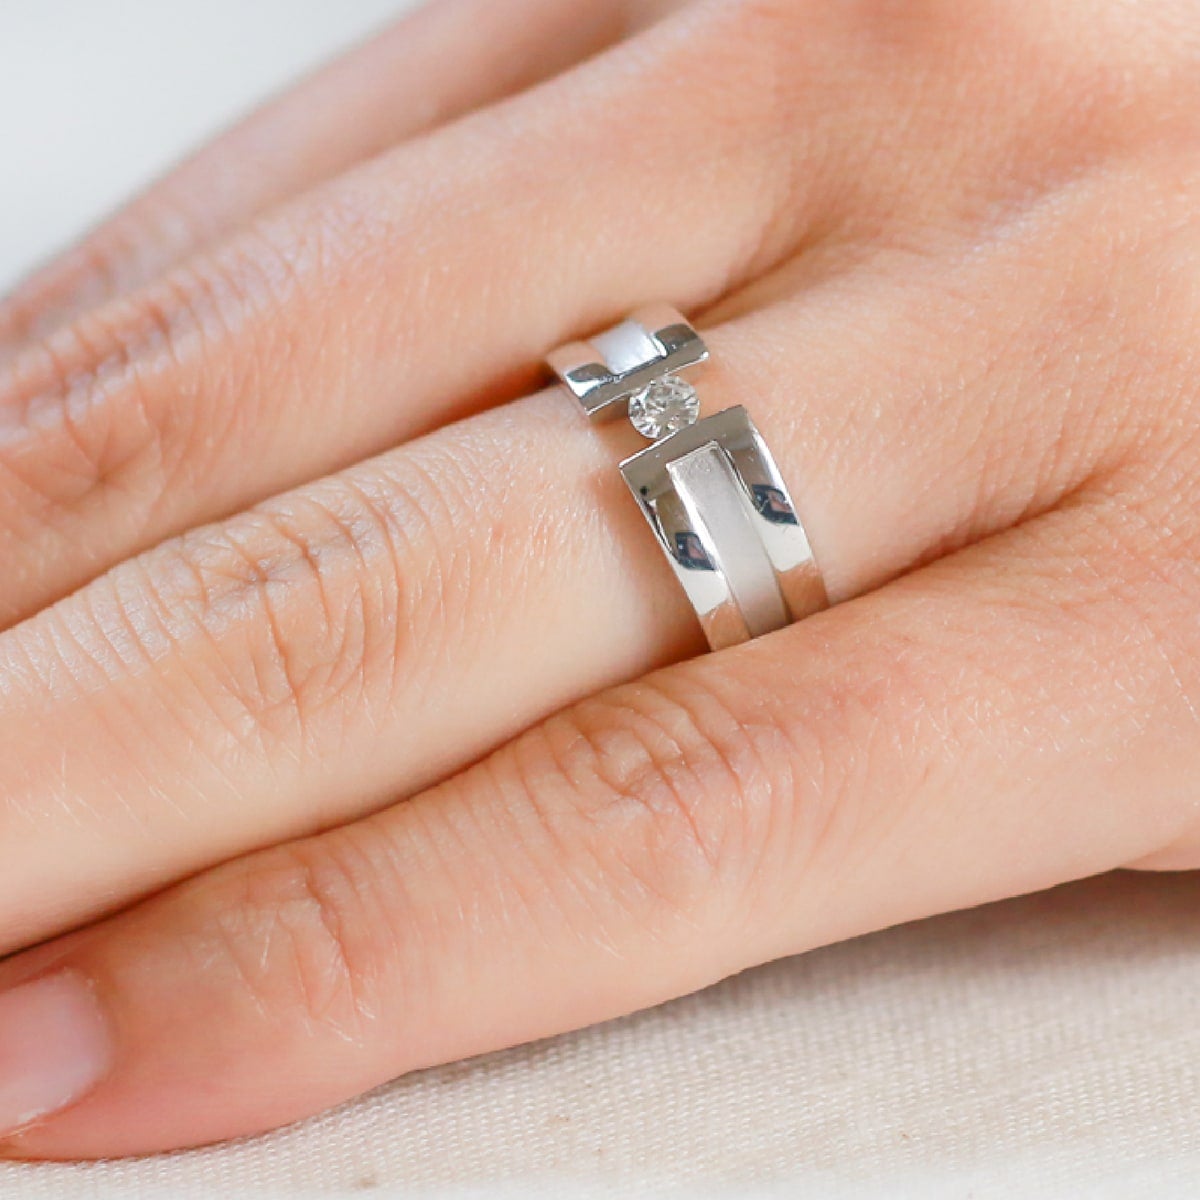 結婚指輪 ダイヤモンド 2本セット | dr3766dr3765